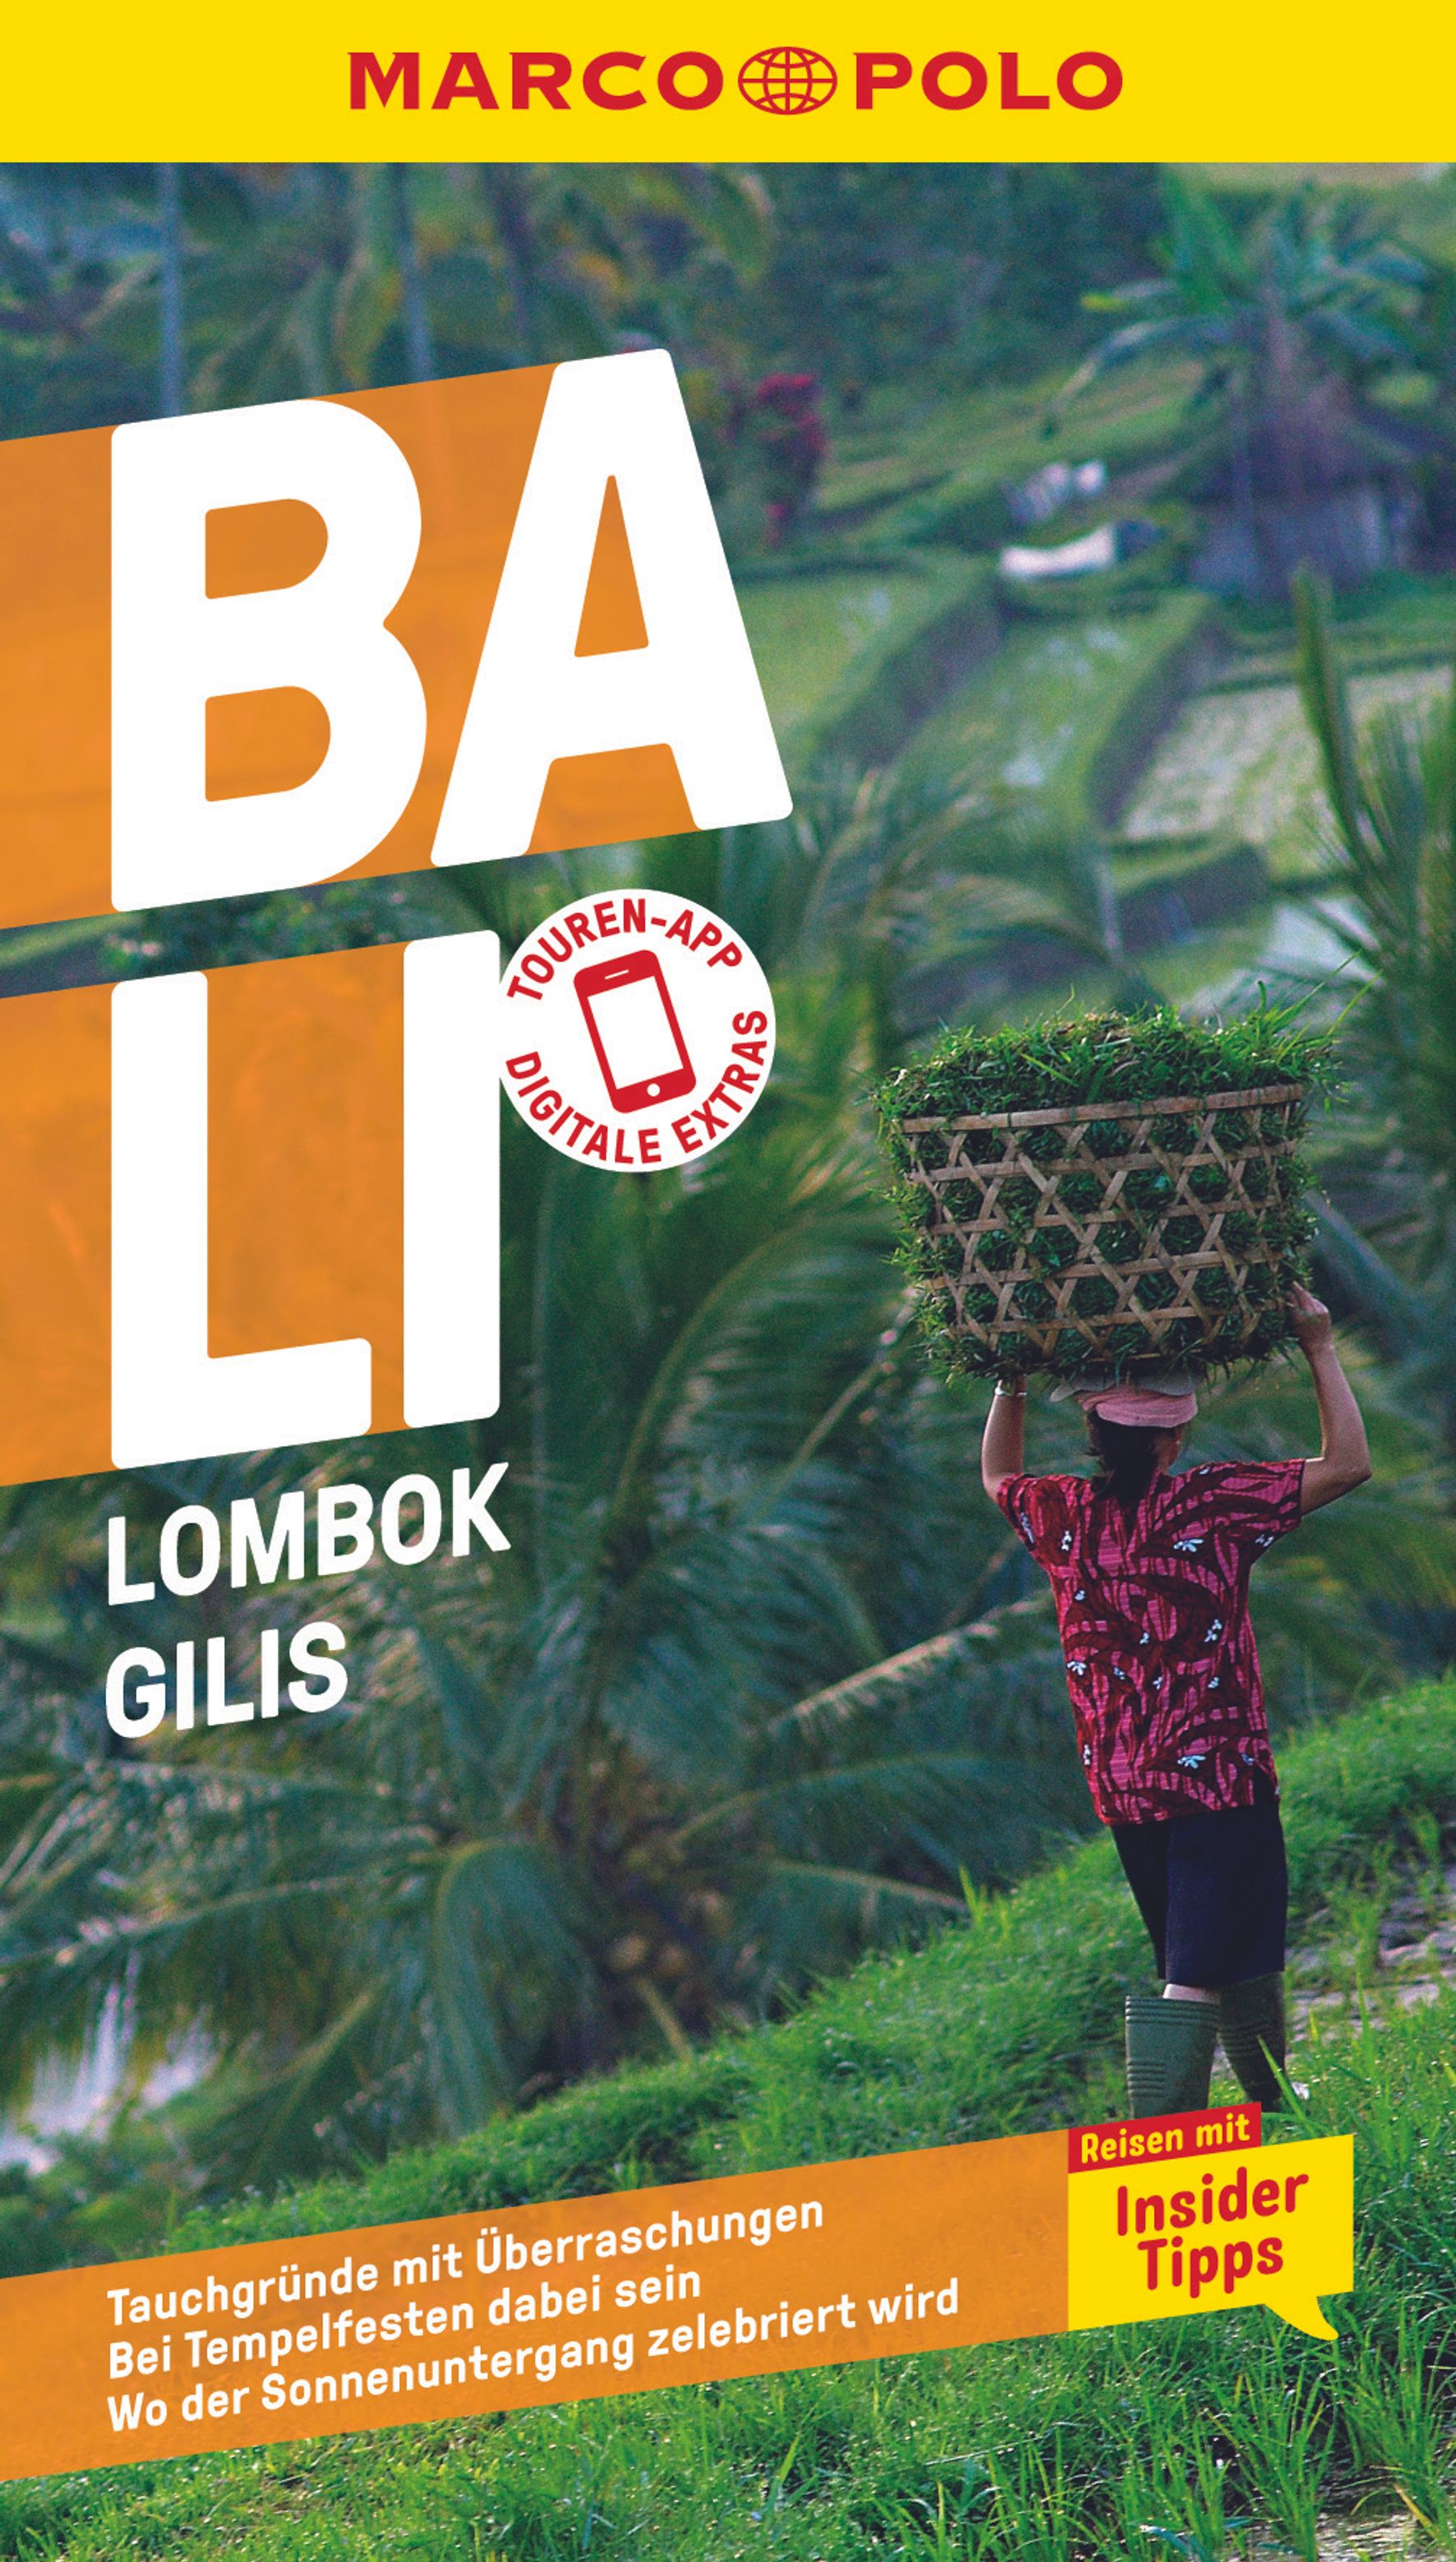 MAIRDUMONT Bali, Lombok, Gilis (eBook)